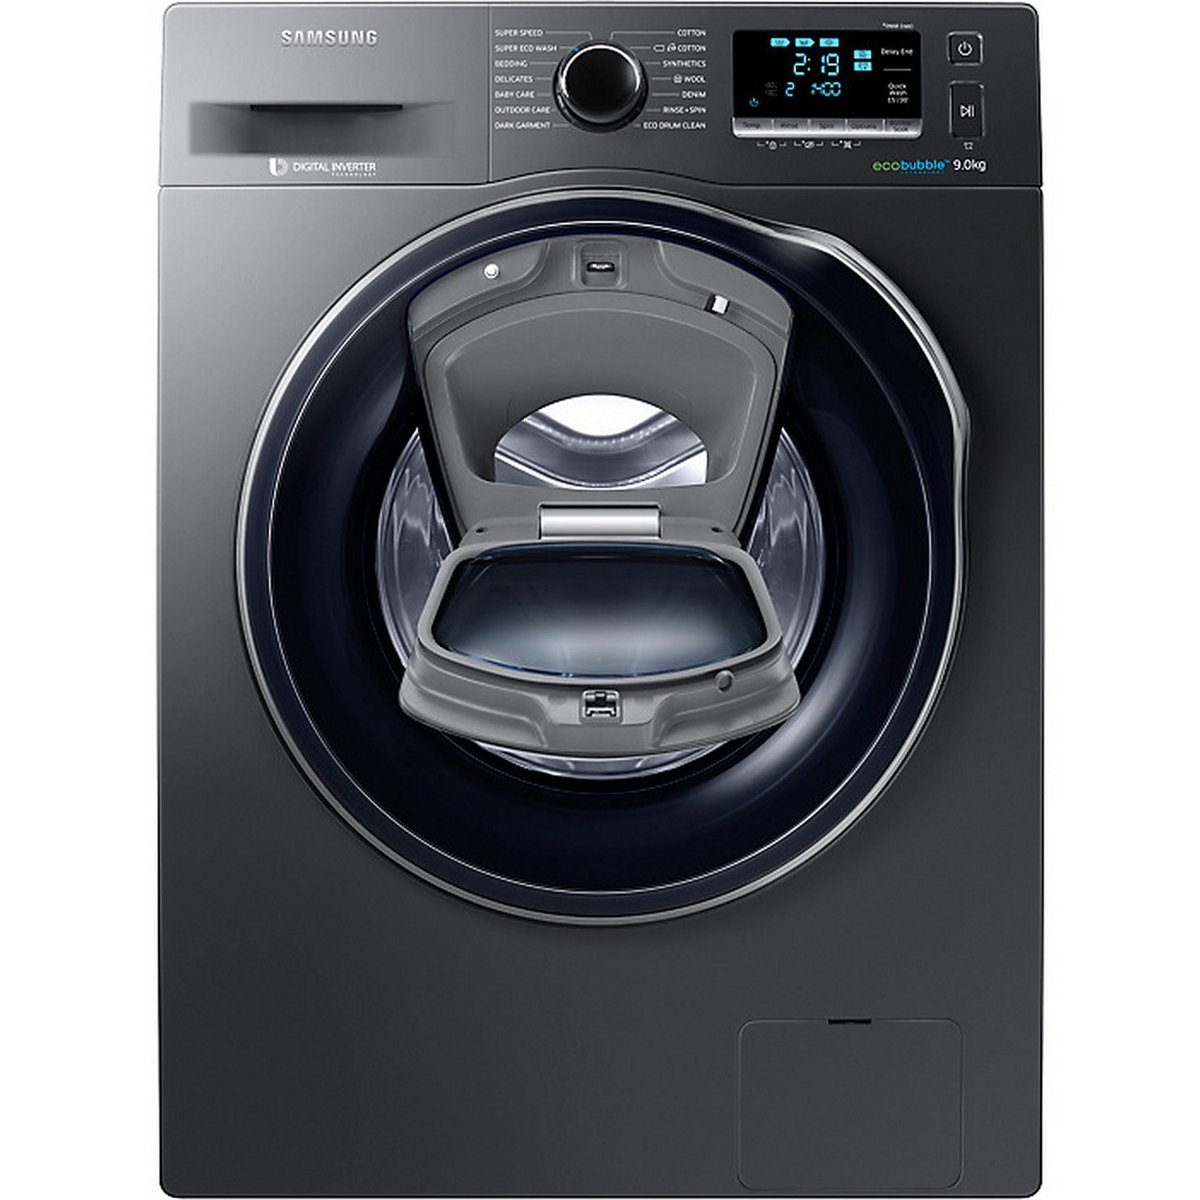 Samsung Front Load Washing Machine WW90K6410QX/GU 9Kg